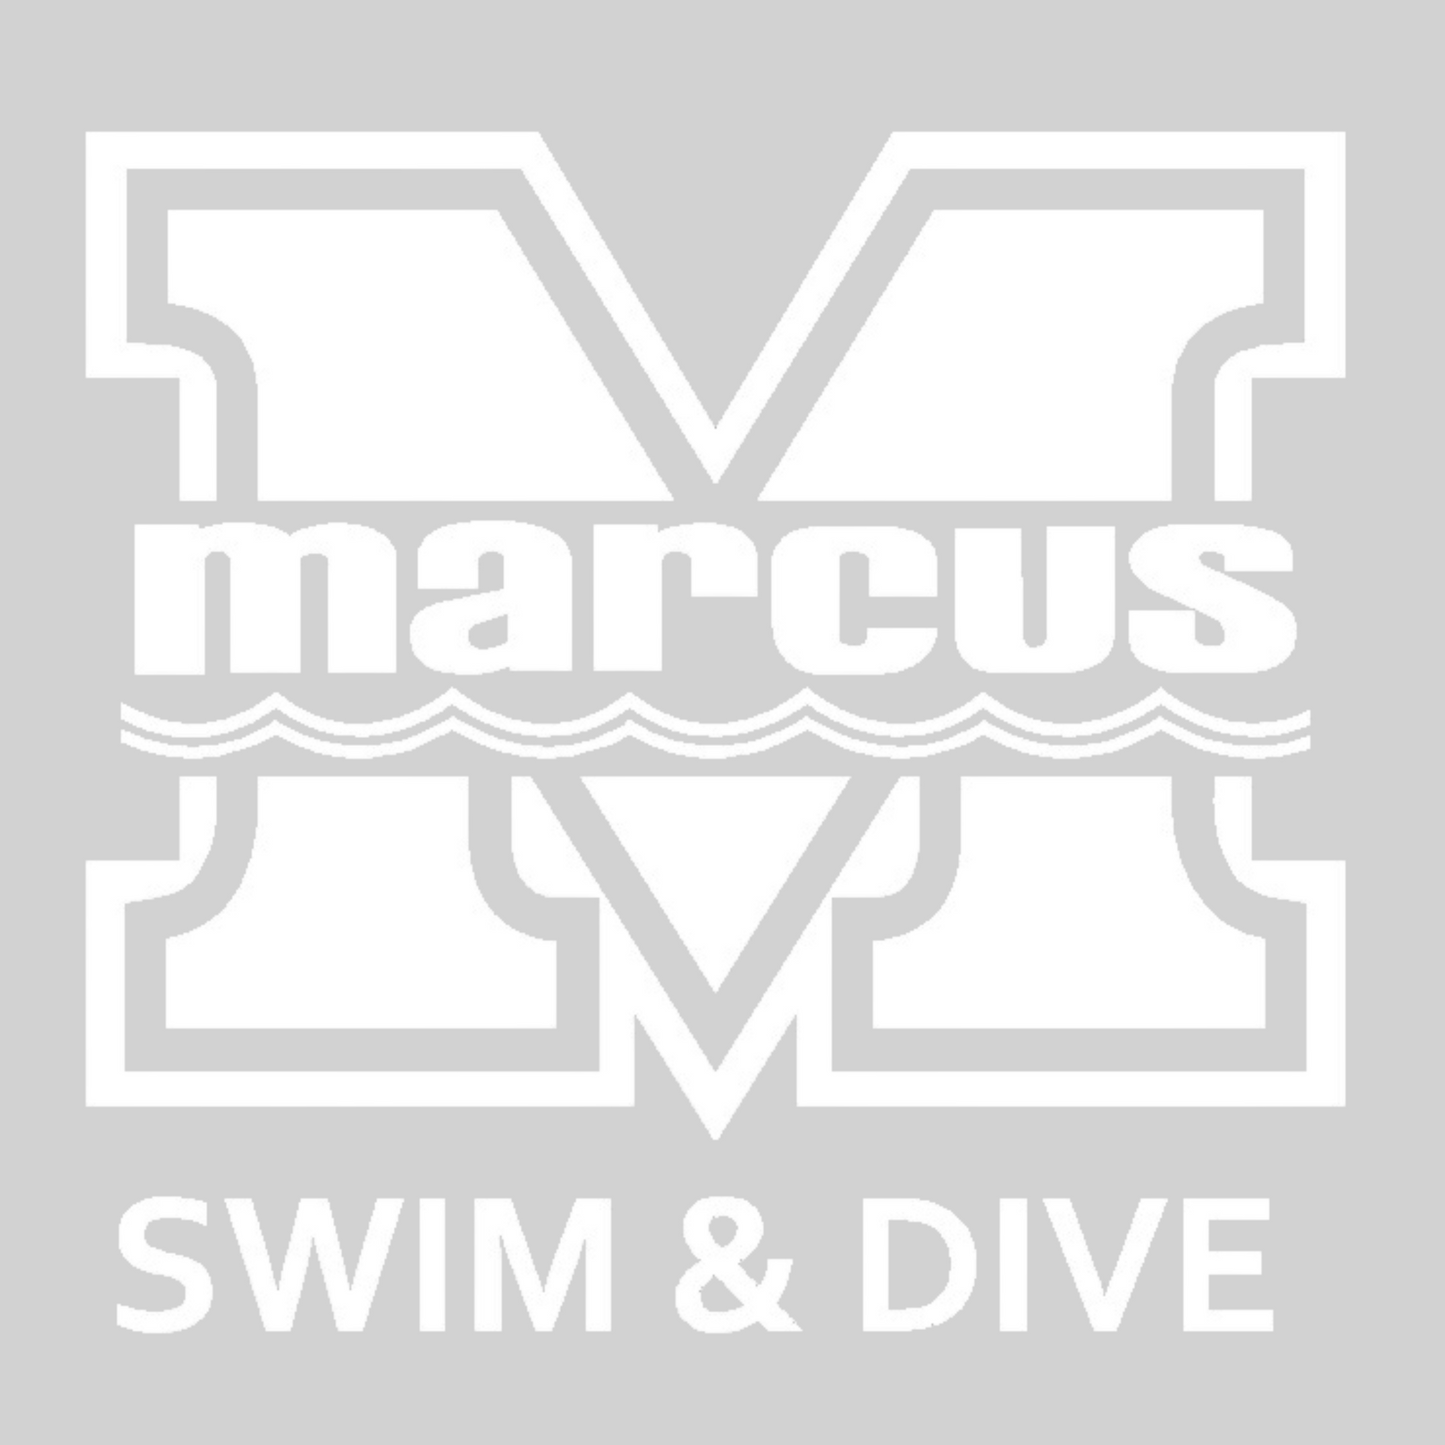 Marcus High School Aquatics Car Decal